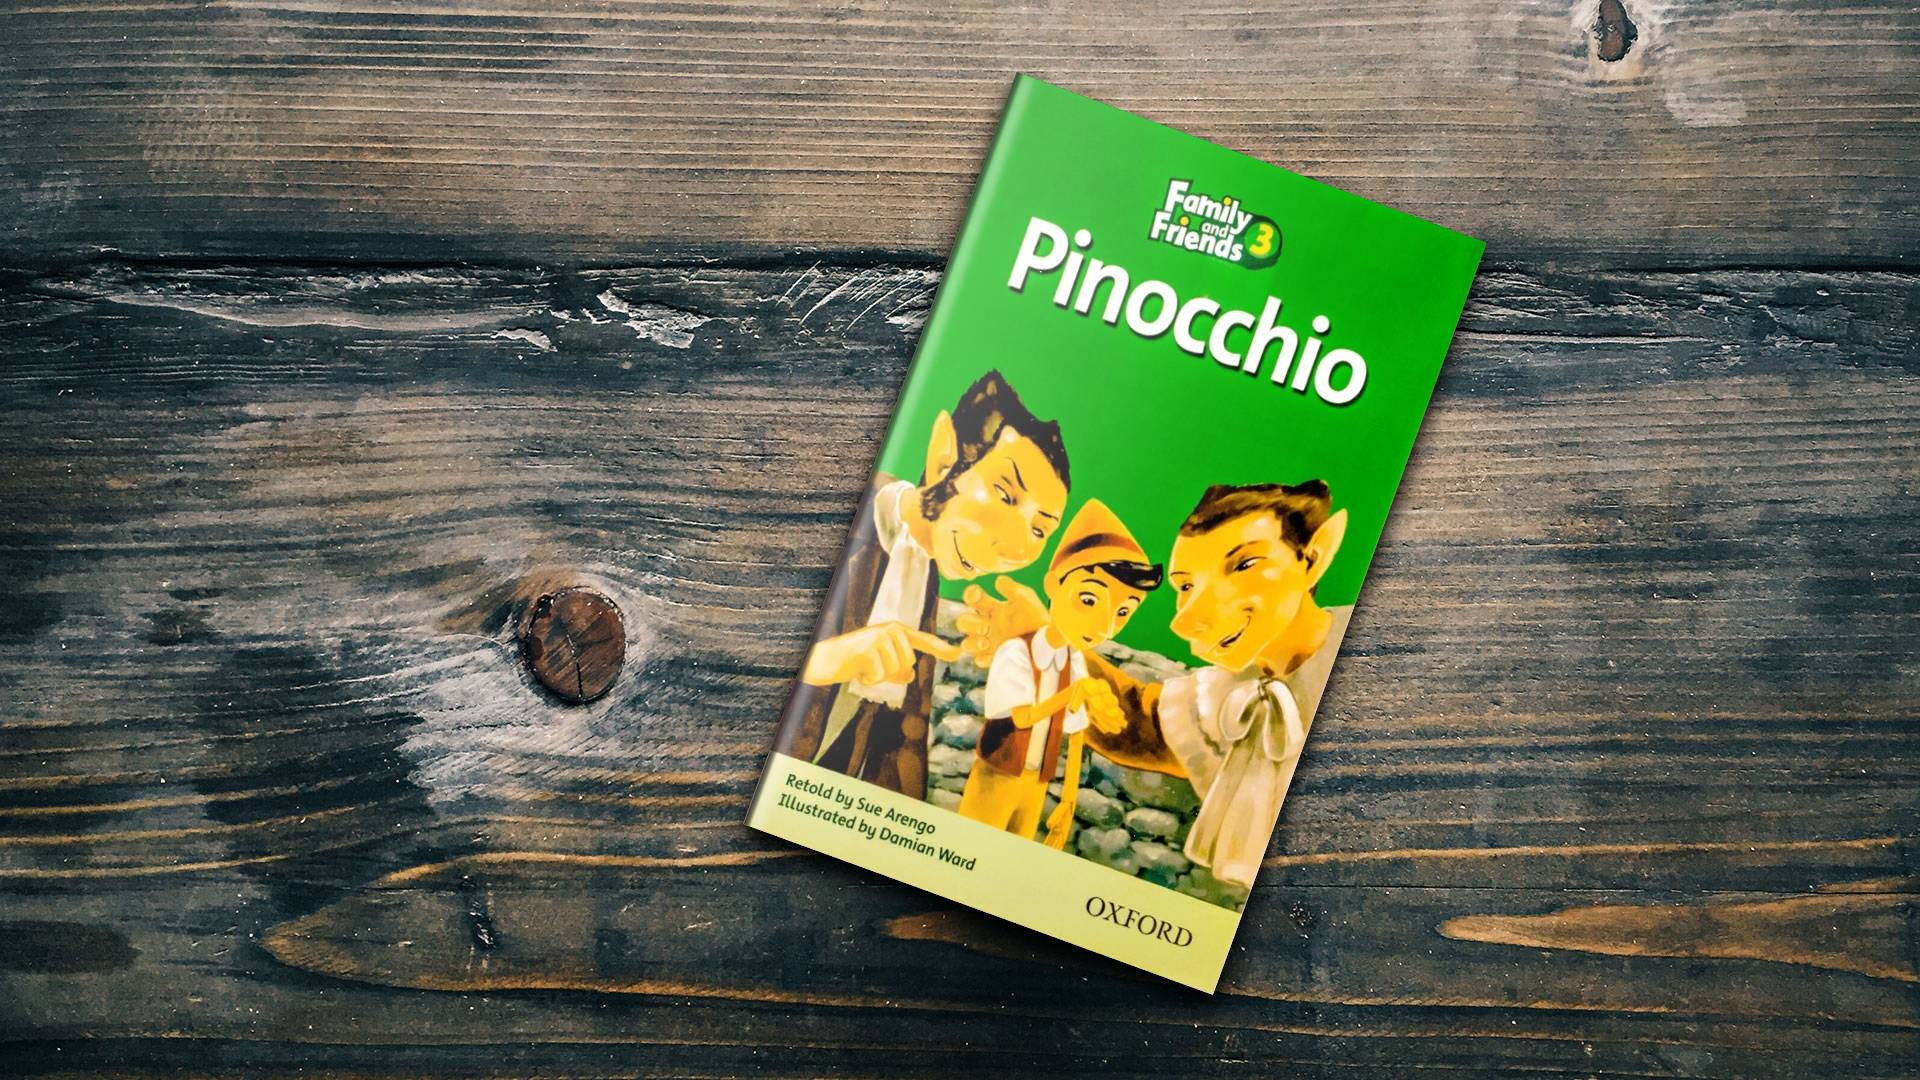 فروشگاه　خرید　داستان　Pinocchio　اند　کتاب　سفارش　Family　کیو　آلمانی　کتاب　فرانسوی　کتاب　زبان　زبان　فرندز　زبان　and　زبان　پینو　کتاب　عمده　Friends　Readers　سه　فمیلی　قیمت